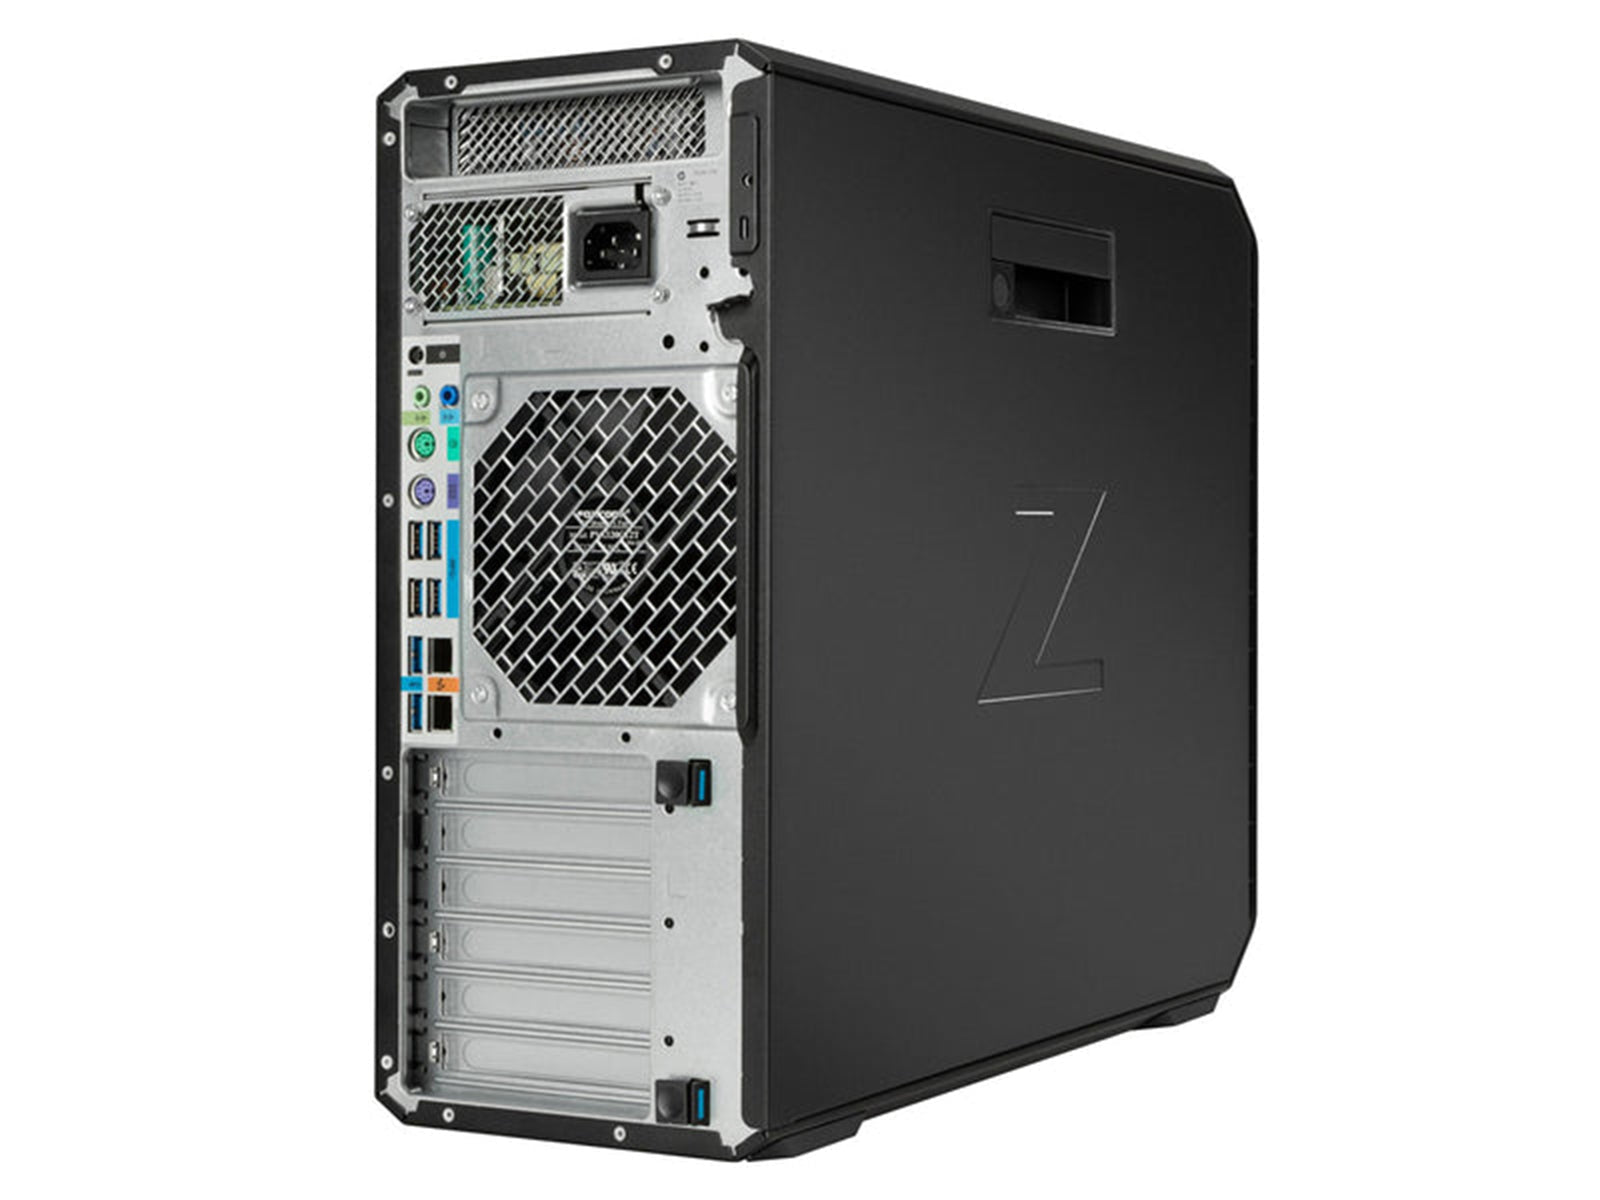 HP Z4 G4 ワークステーション |インテル Xeon W-2245 | 128GB DDR4 | 1TB NVMe SSD | MXRT-8700 | Win10プロ